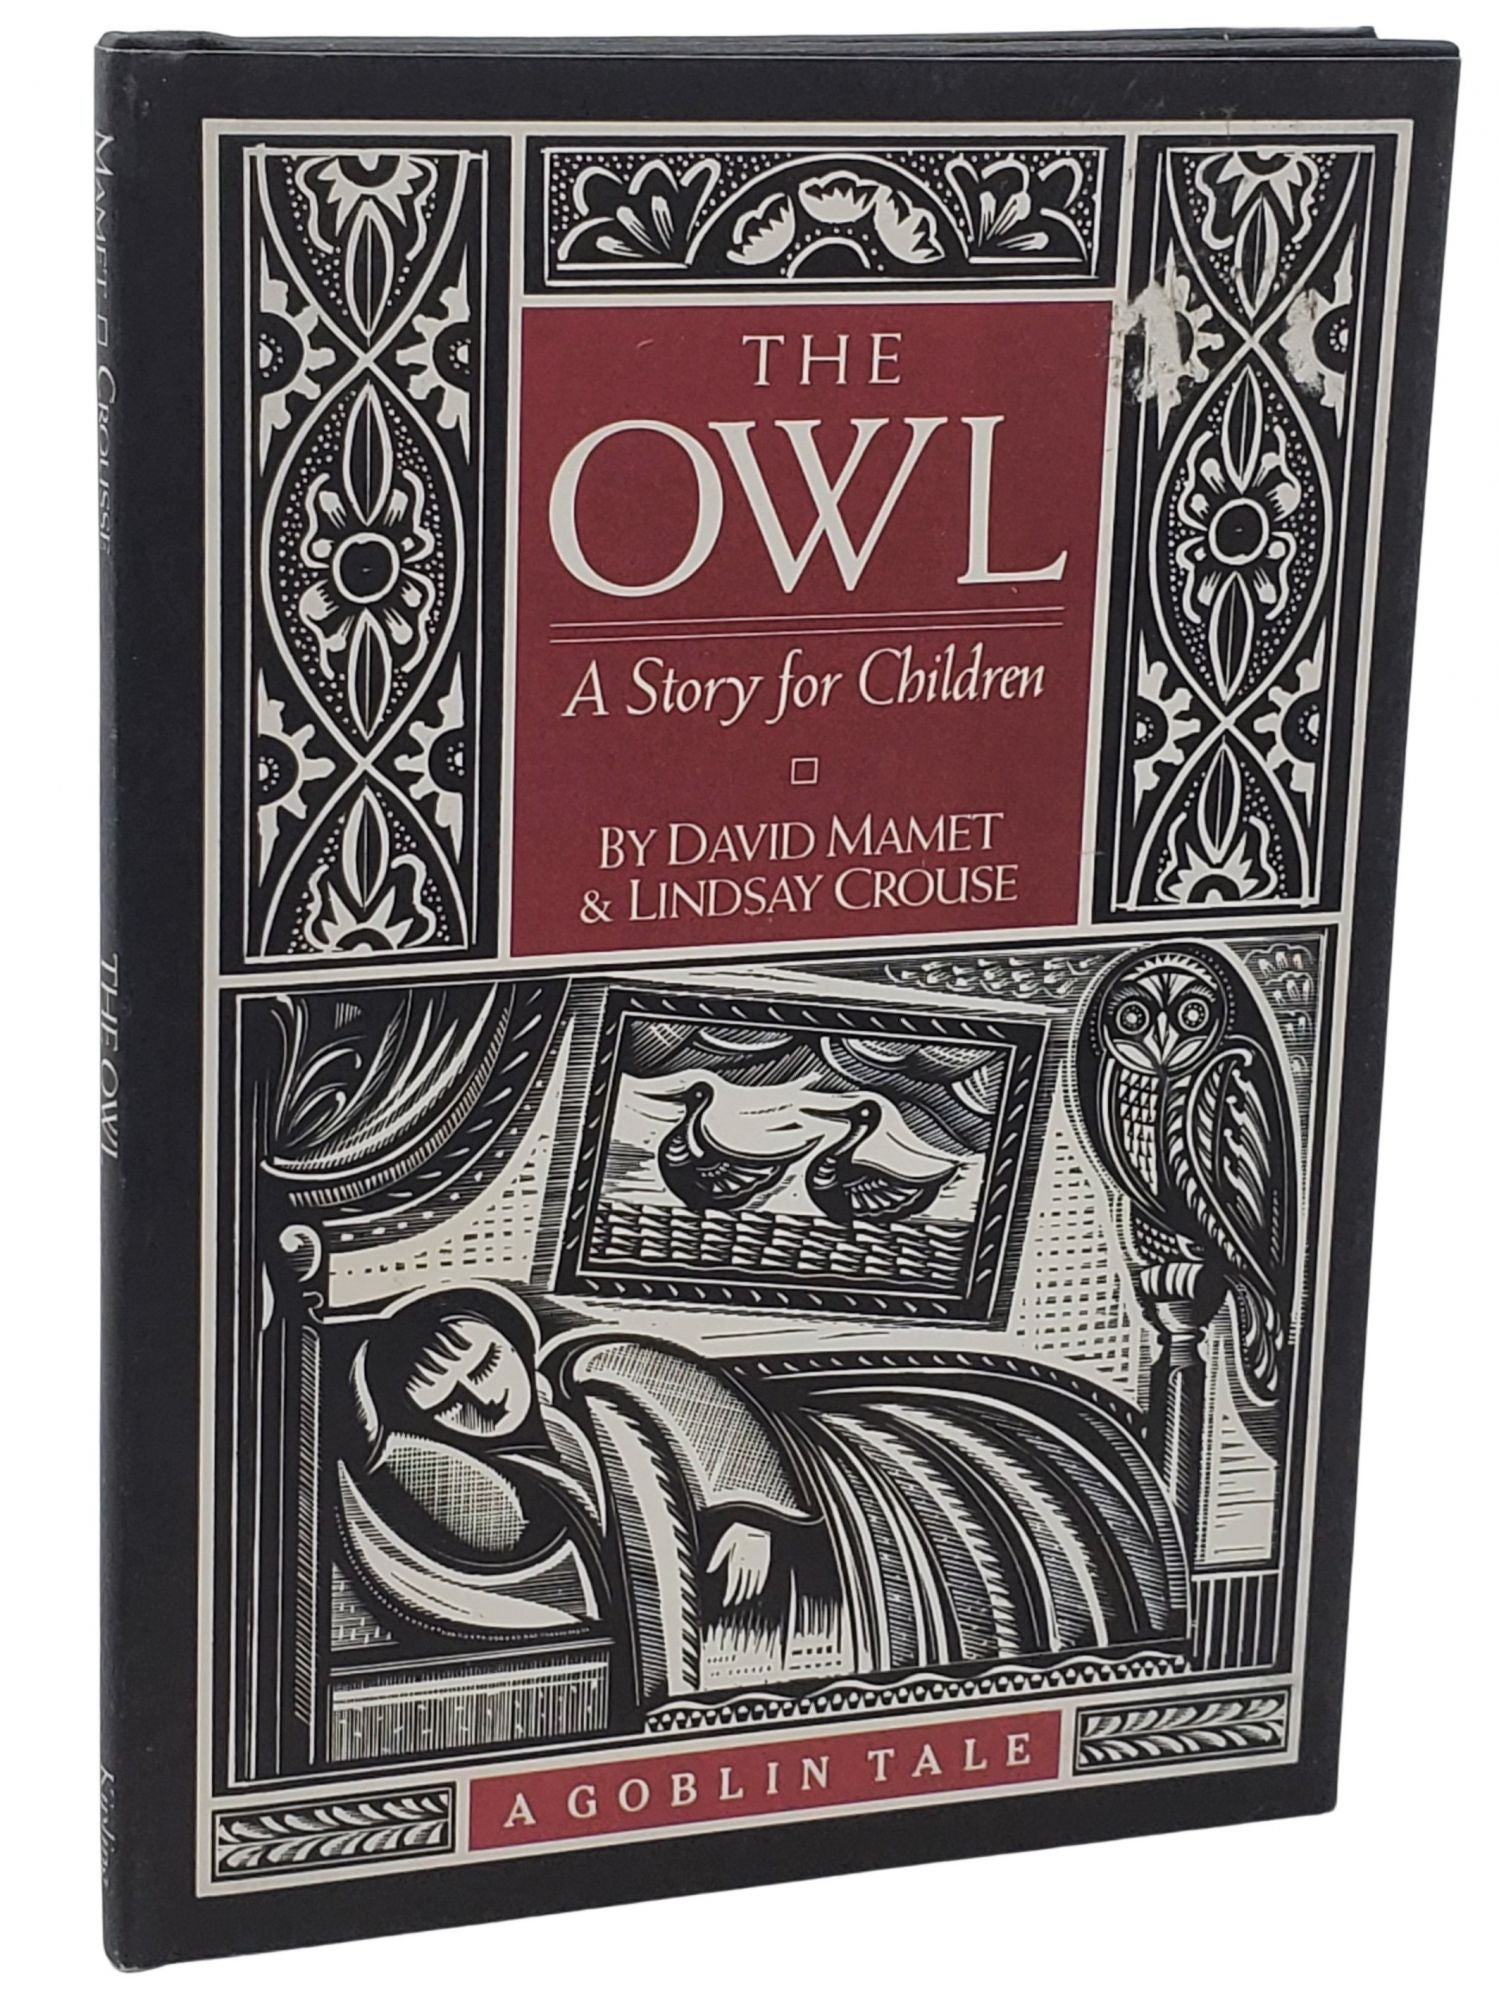 [Book #21621] THE OWL. David Mamet, Lindsay Crouse.